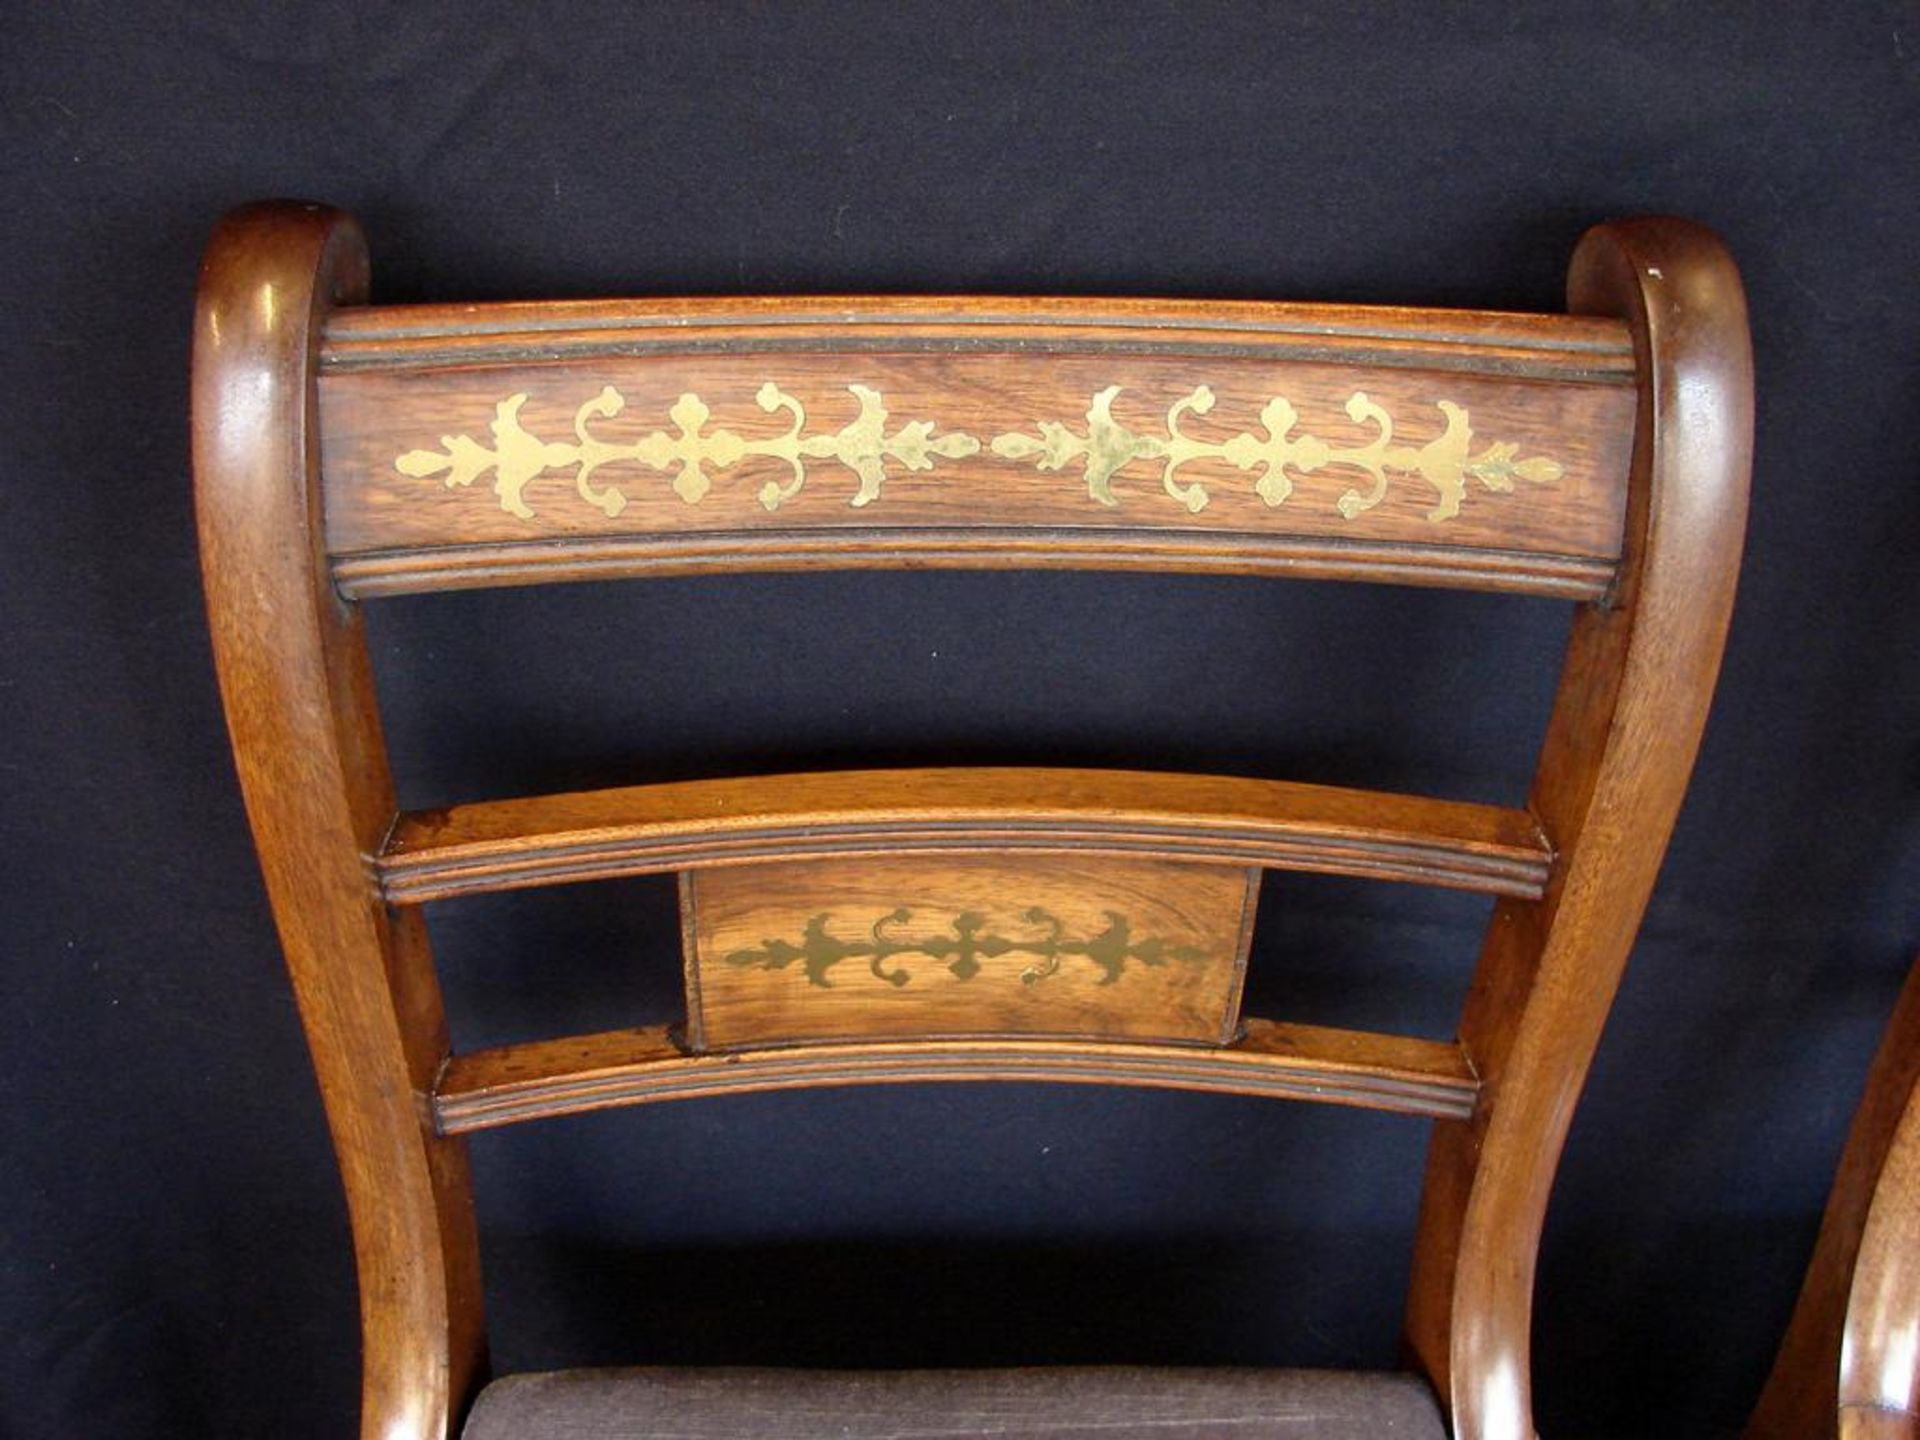 6 Stühle, Buche, mit Messingeinlegearbeiten, Bezug teils beschädigt - Bild 2 aus 3